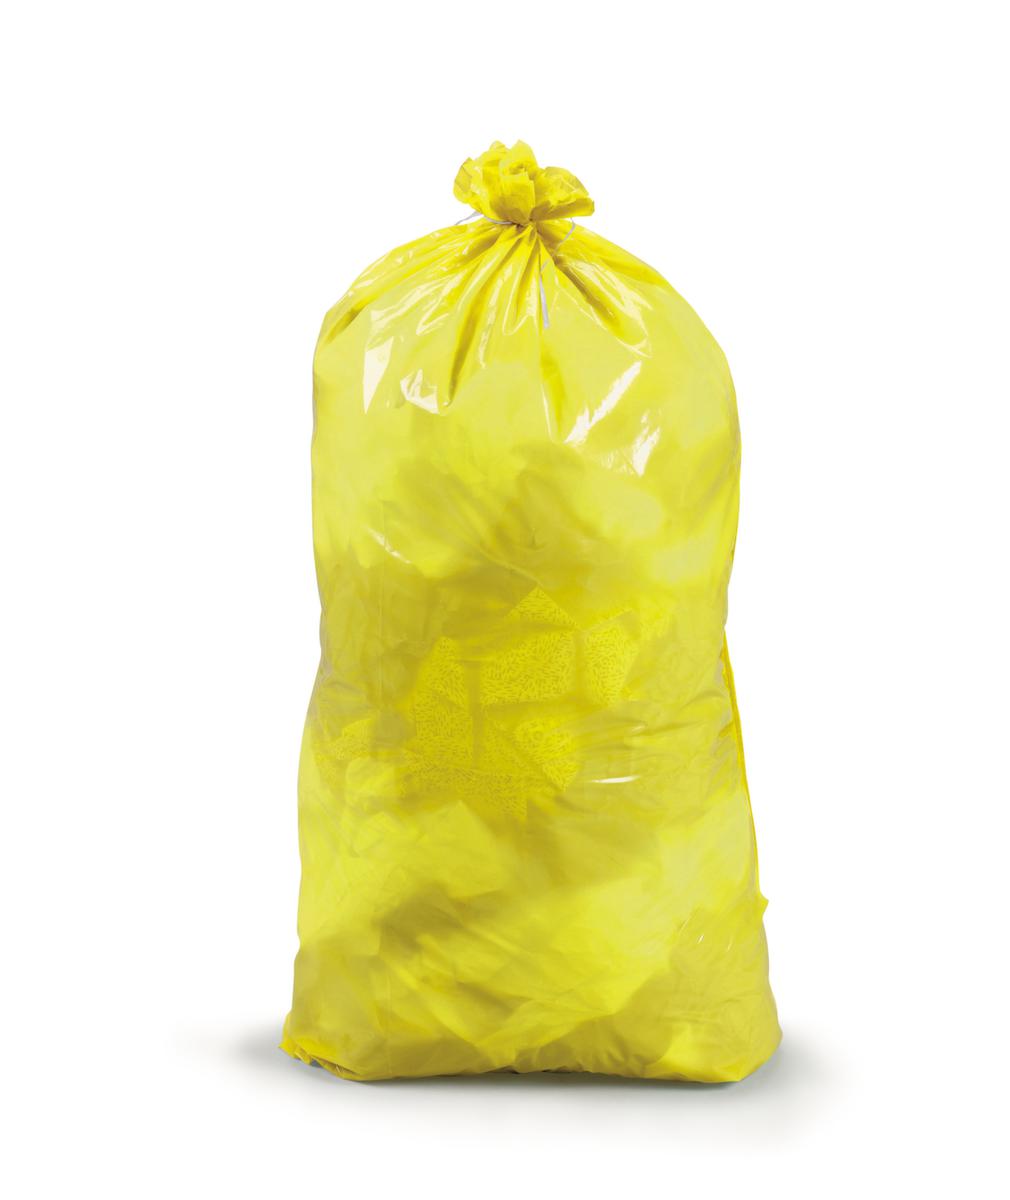 Raja Scheurvaste vuilniszak met sluitband, 30 l, geel  ZOOM